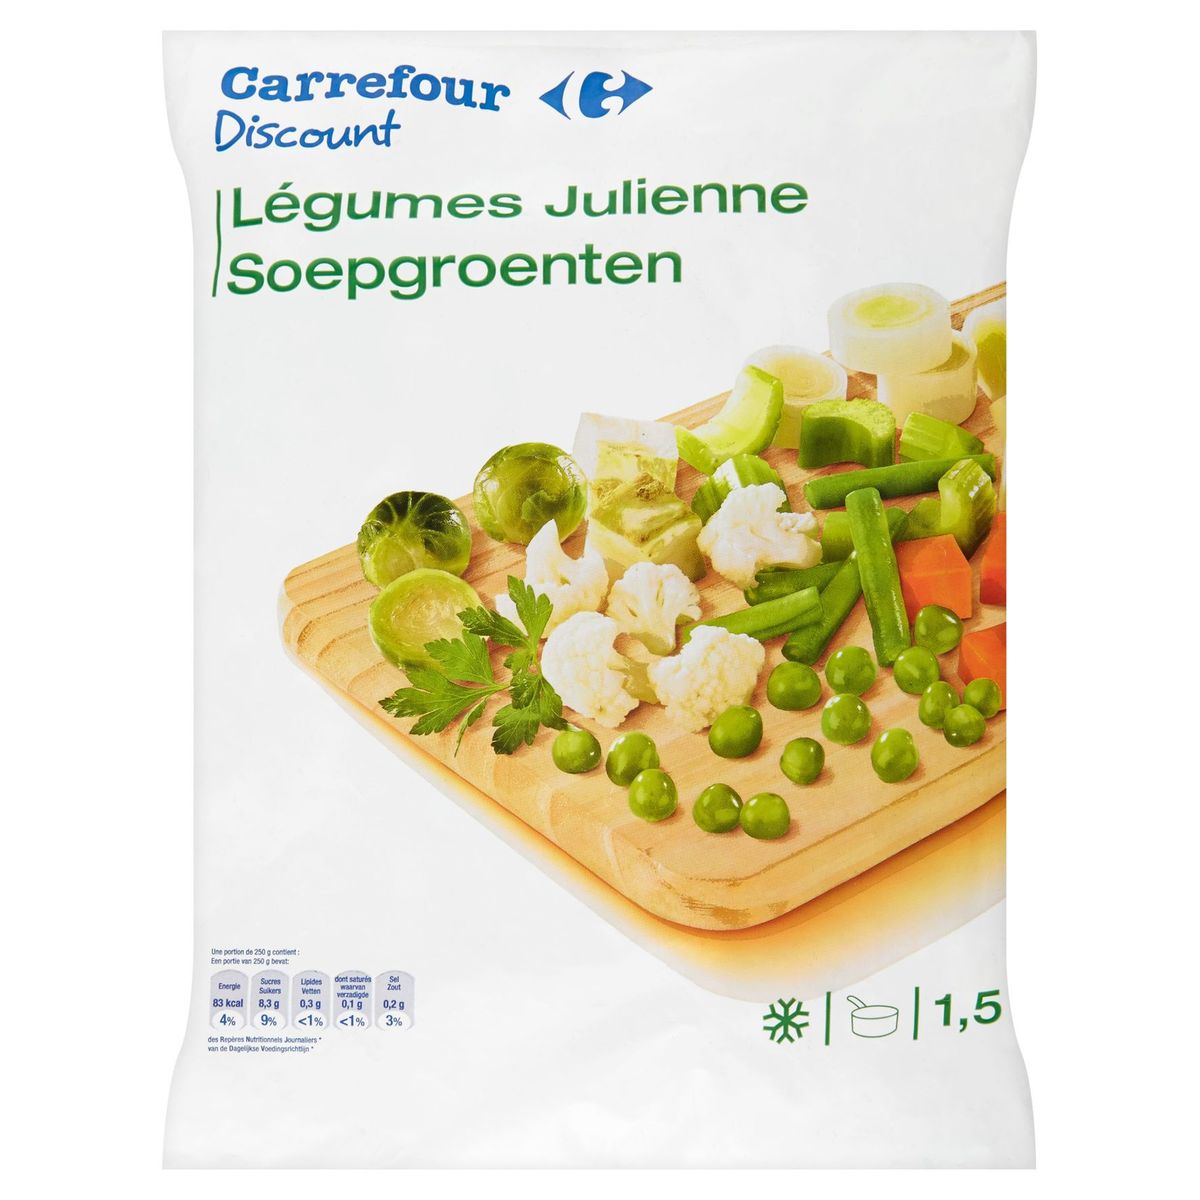 Carrefour Discount Légumes julienne 1.5 kg